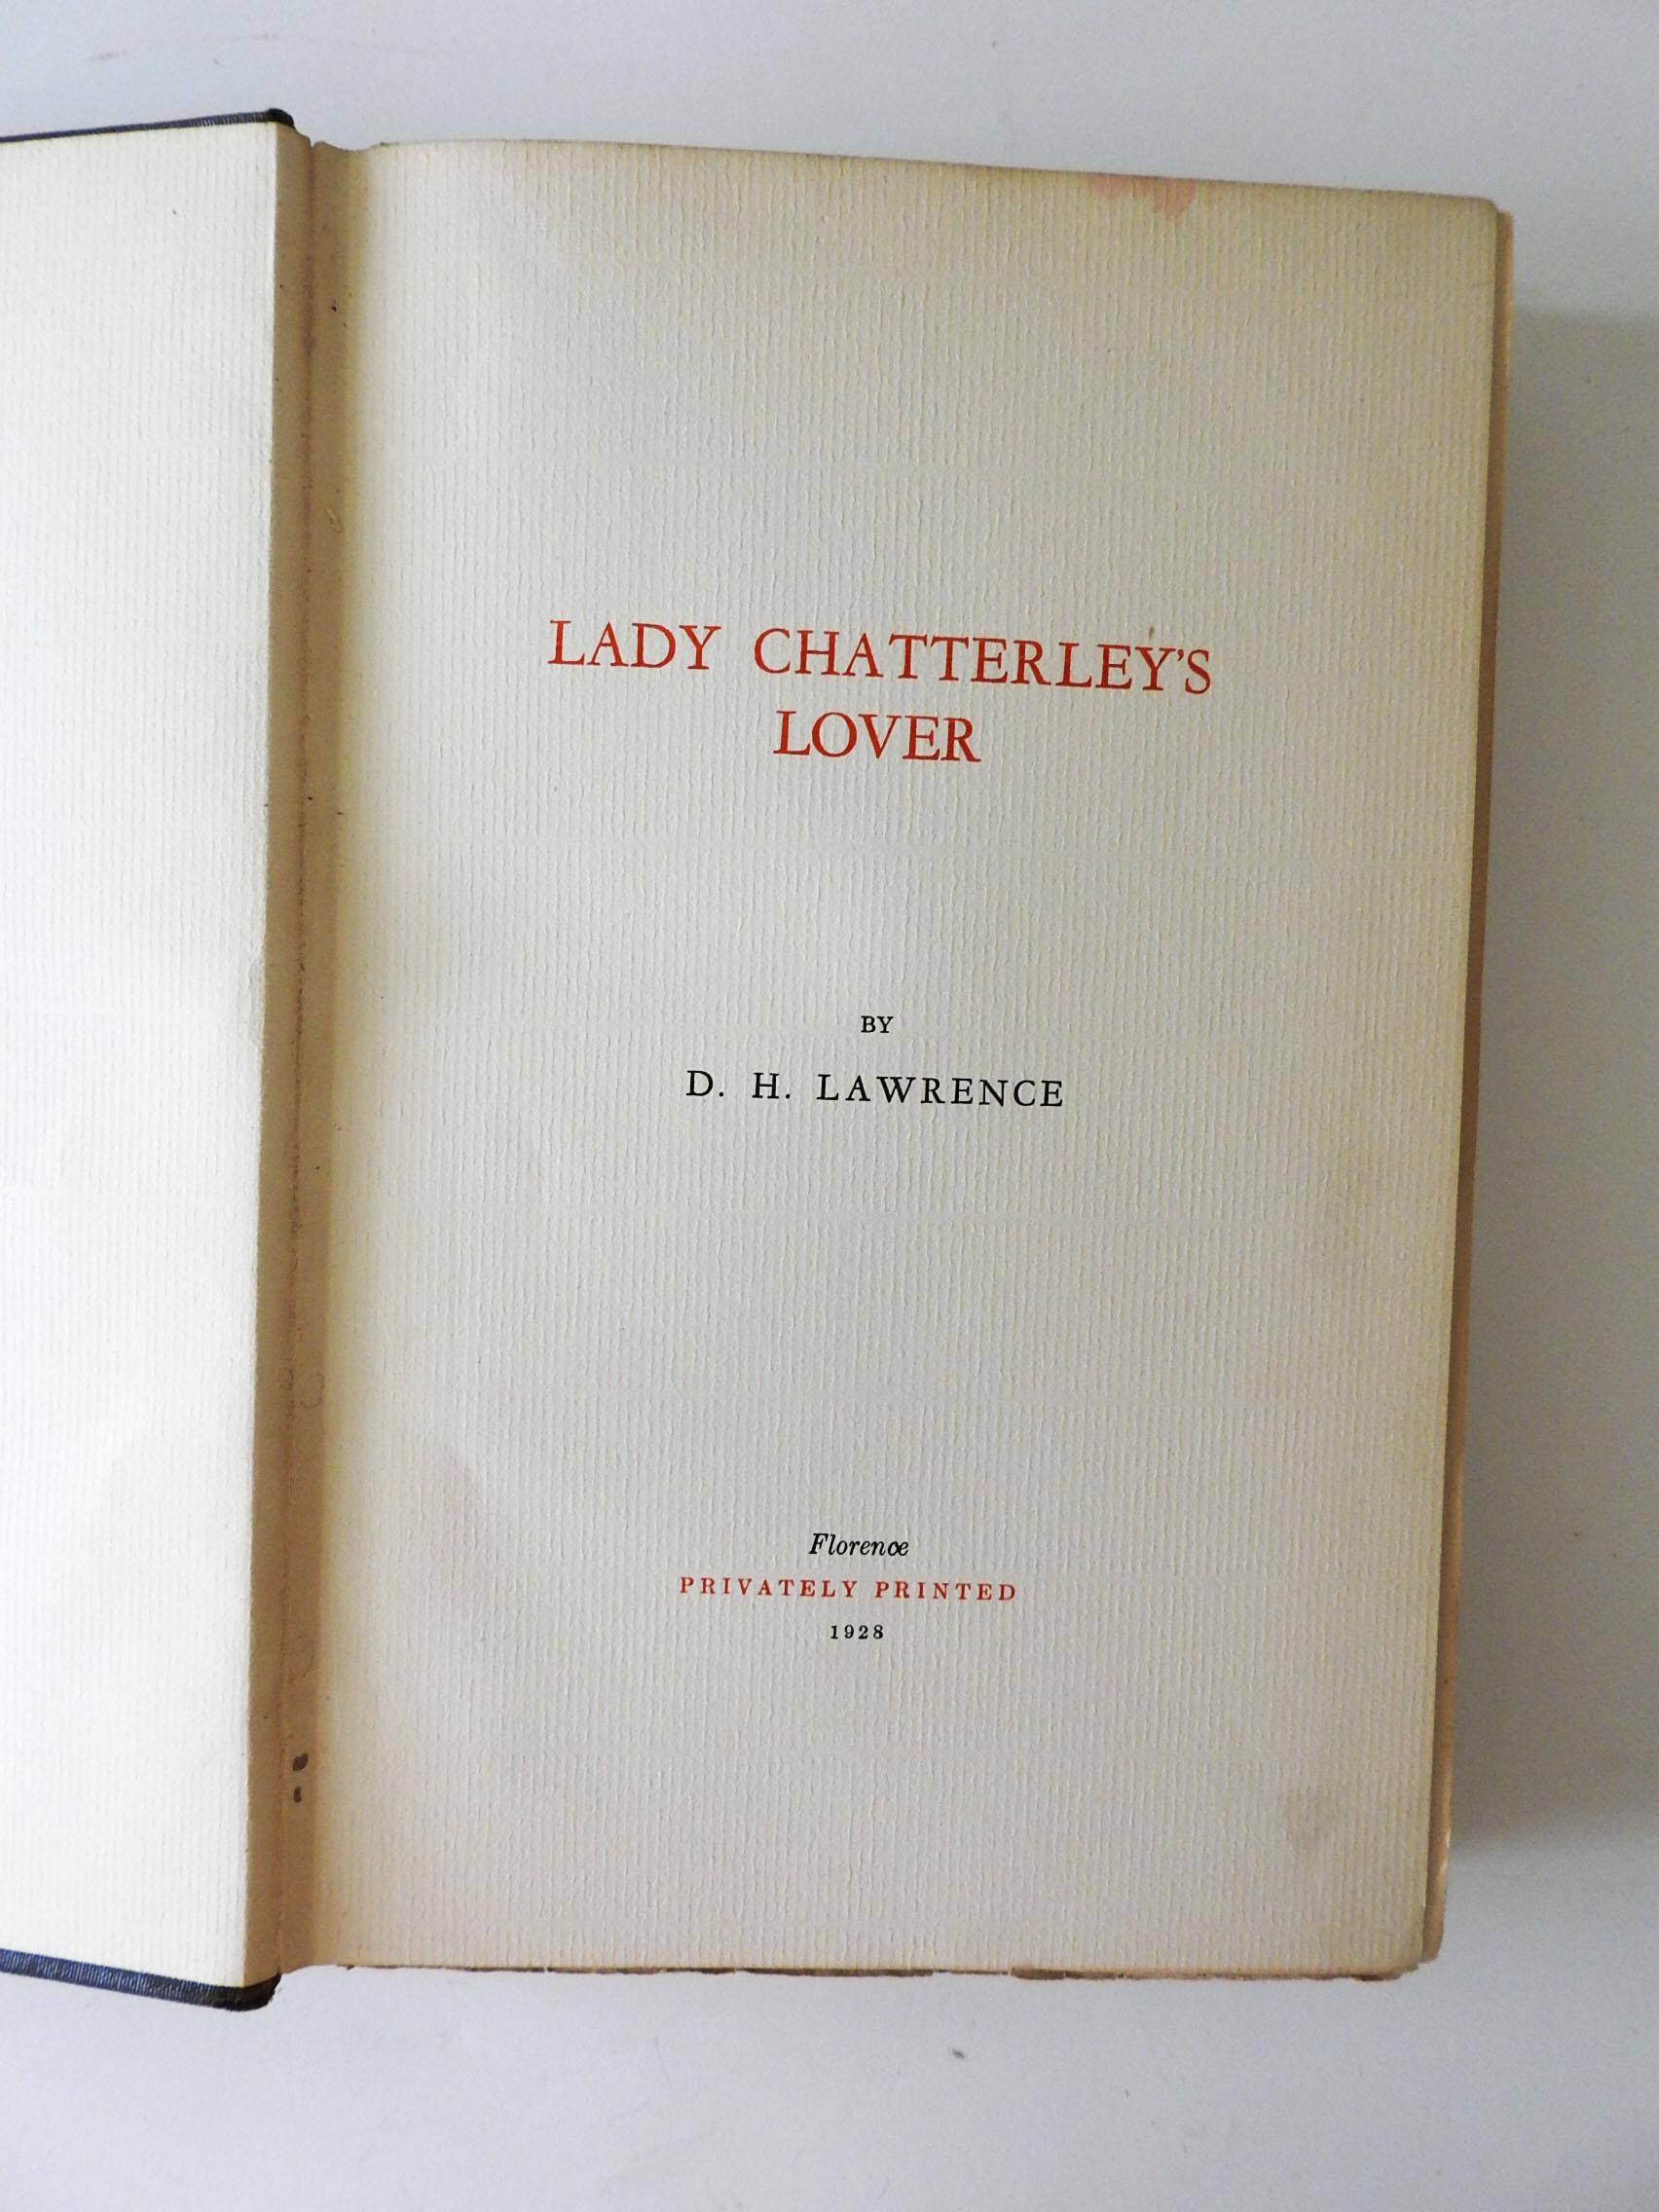 L'Amant de Lady Chatterley par D.H. Lawrence. Publié par Privately Printed , Florence, Italie, 1928 Une édition pirate précoce maintenant assez rare. Toile originale noire à motifs moirés avec une étiquette en papier sur le dos imprimée en rouge et